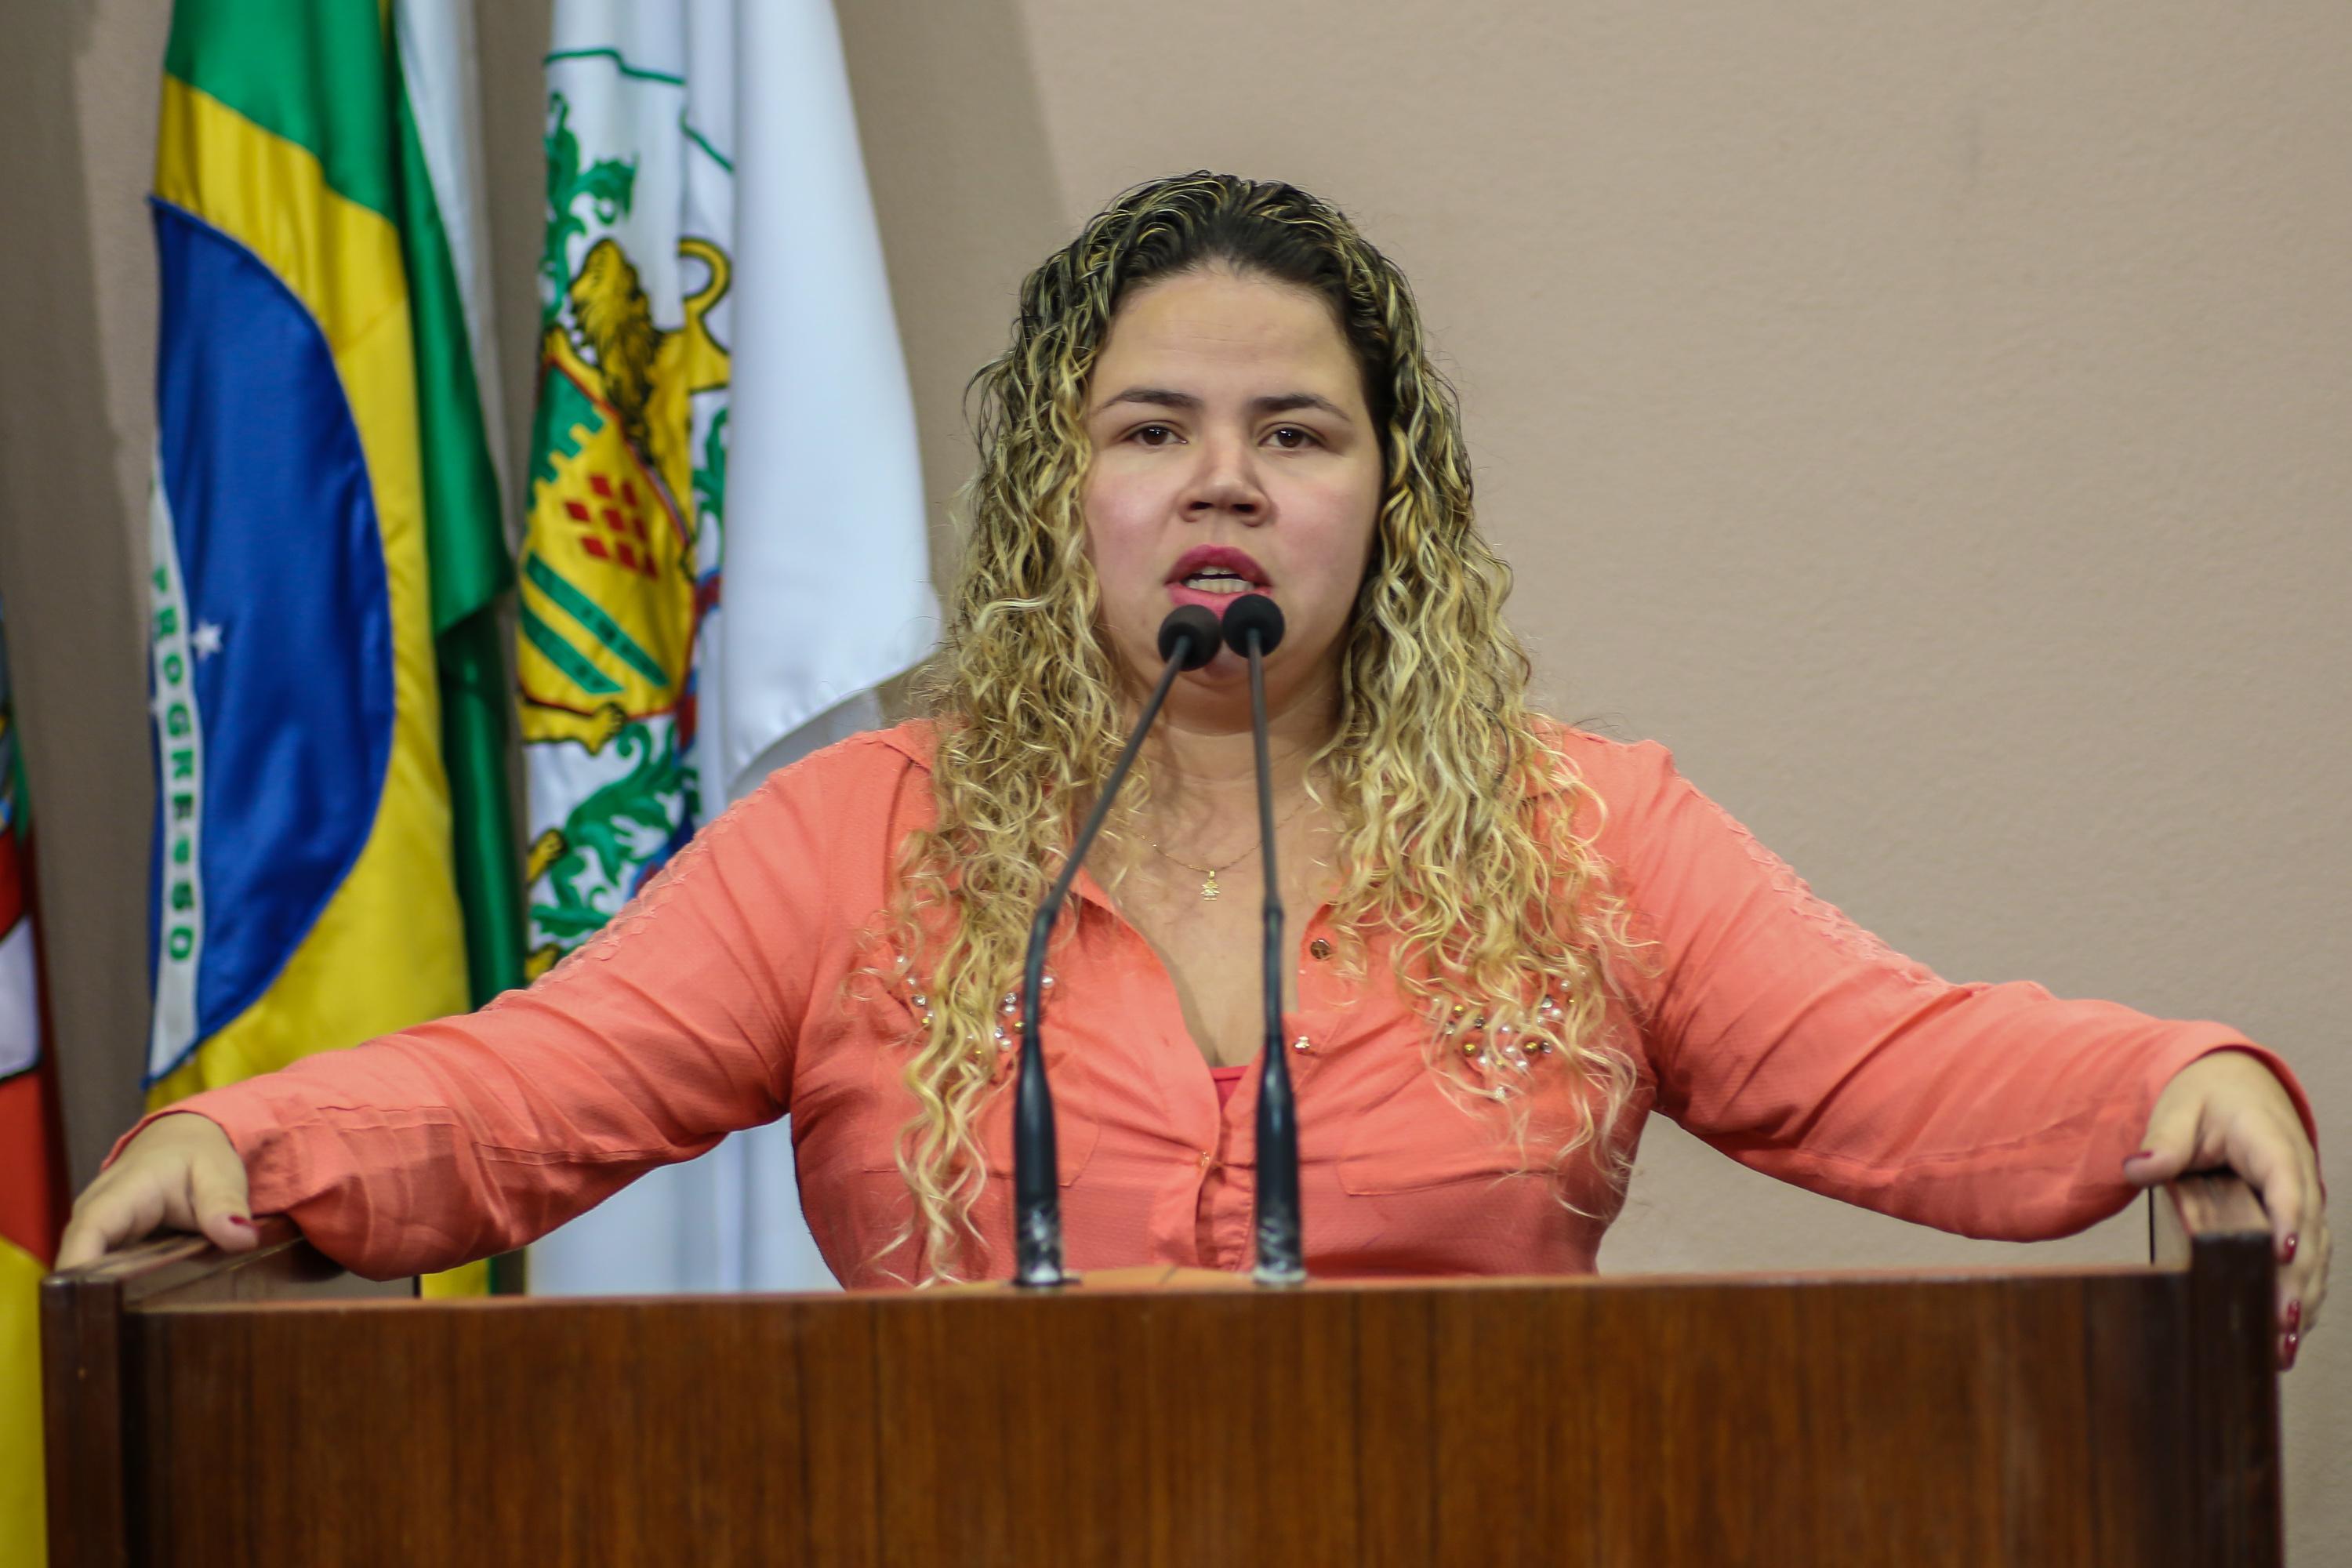 Debatido projeto de lei para instituir o Dia Municipal do Feirante em Caxias do Sul